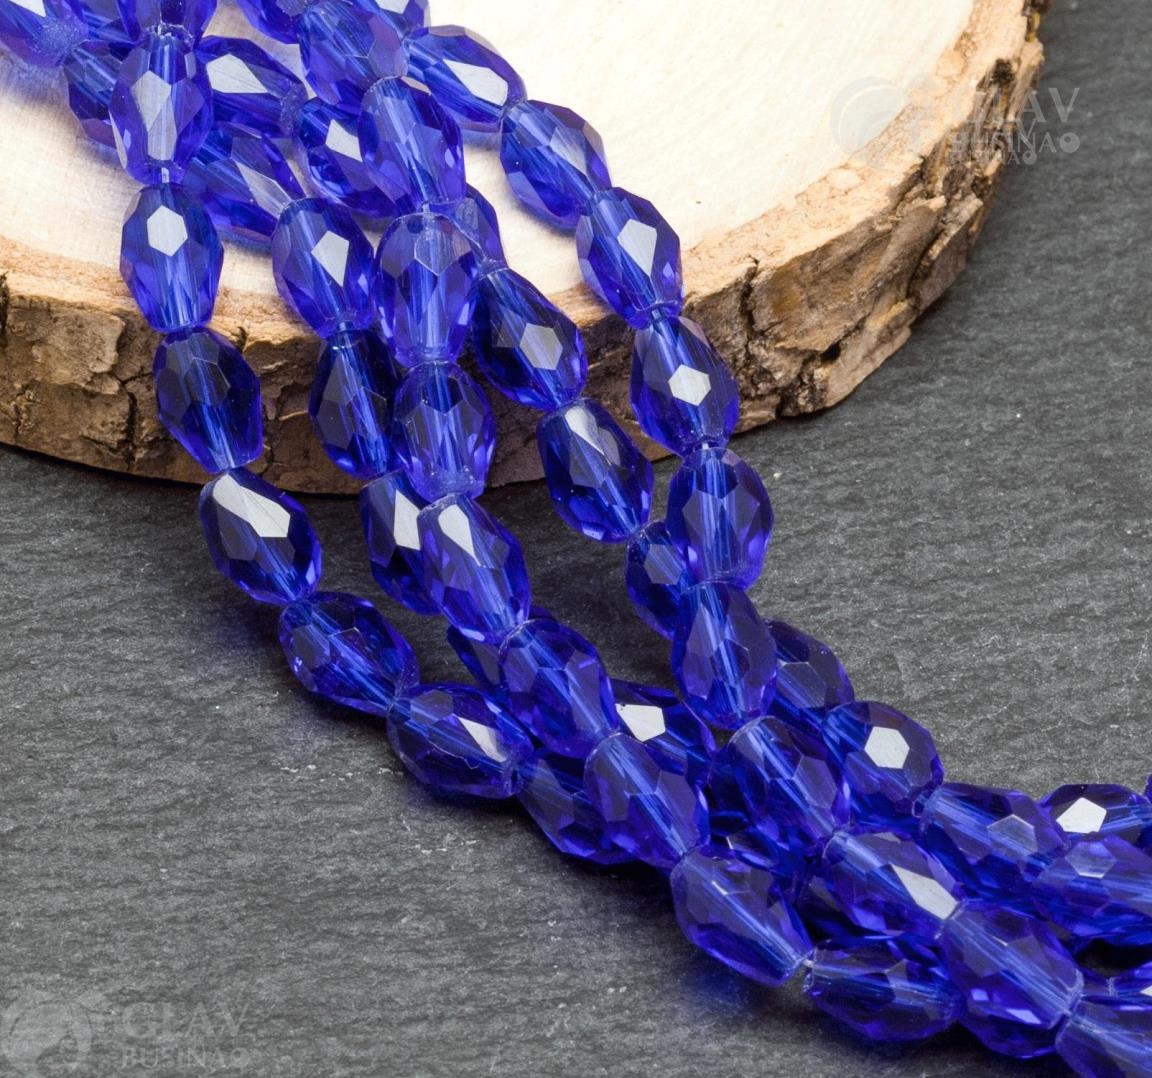 Нитка граненых хрустальных бусин-капель, размер 6х8мм, длиной 52 см. На нитке около 65 синих бусин. Привлекательное украшение для создания элегантных украшений.